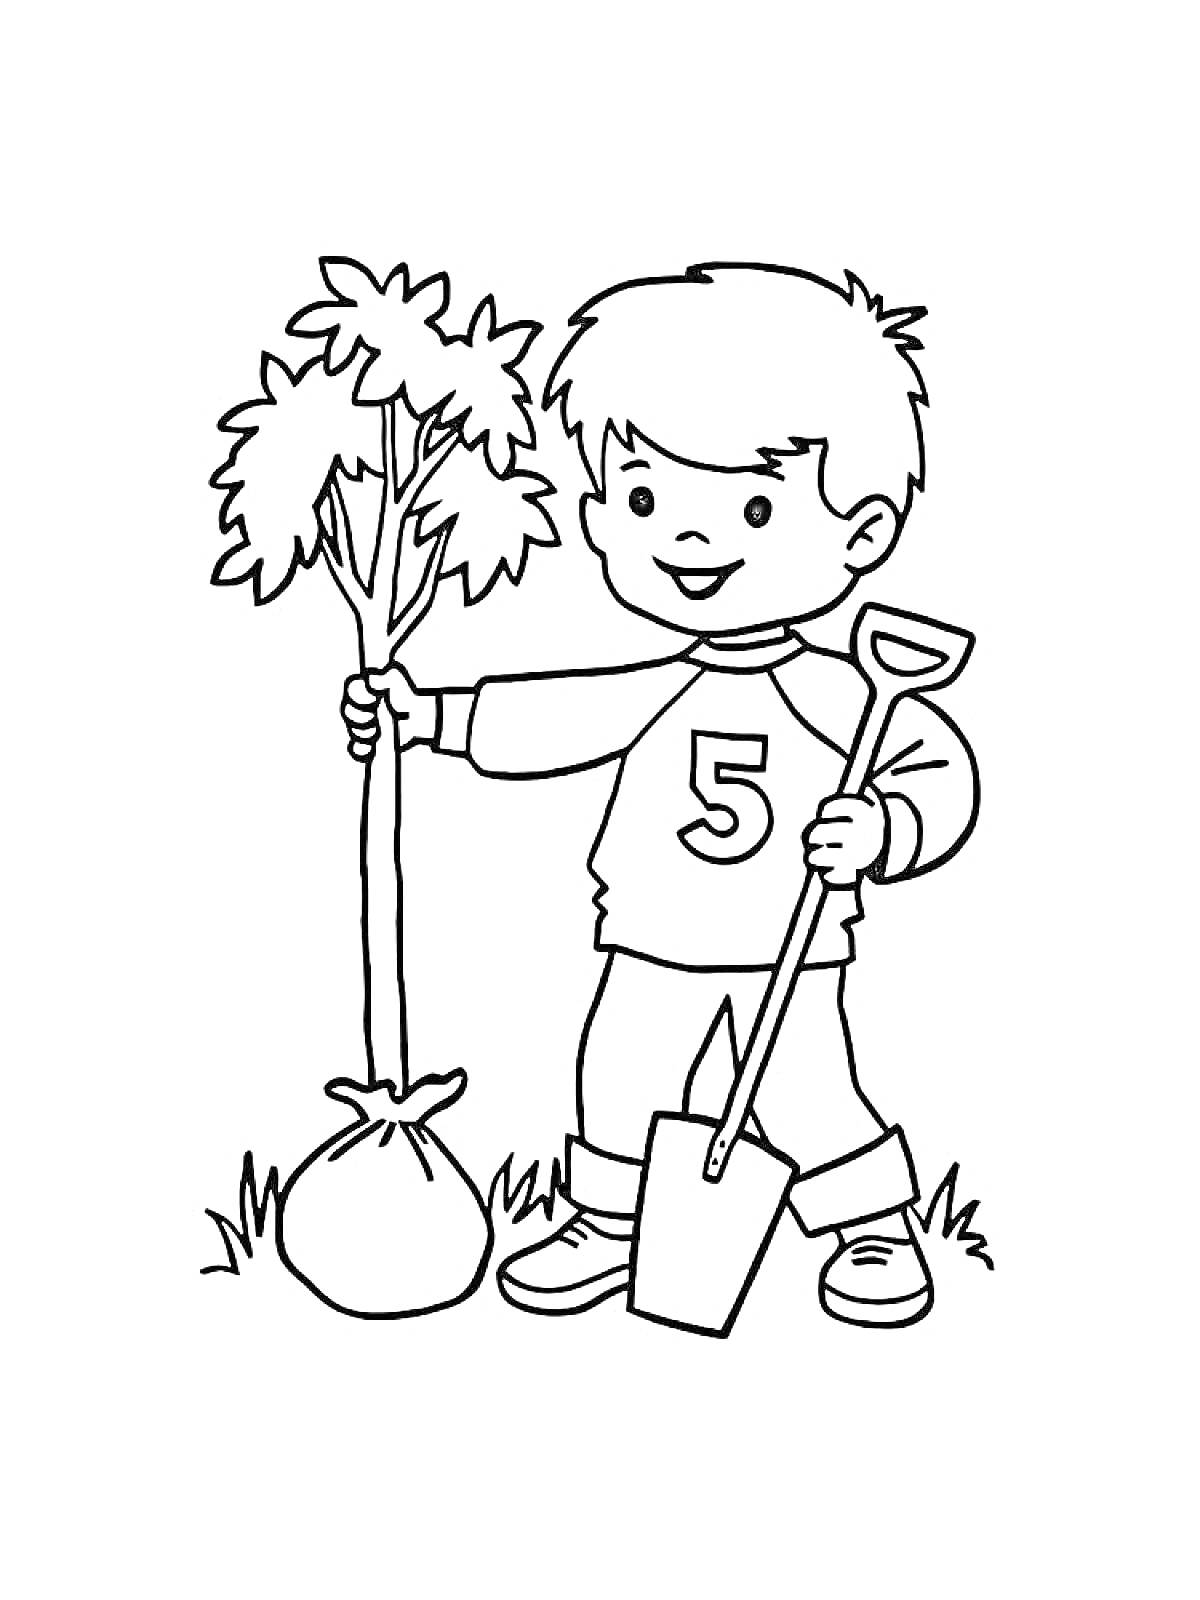 Раскраска Мальчик с номером 5 на одежде сажает дерево, держа лопату